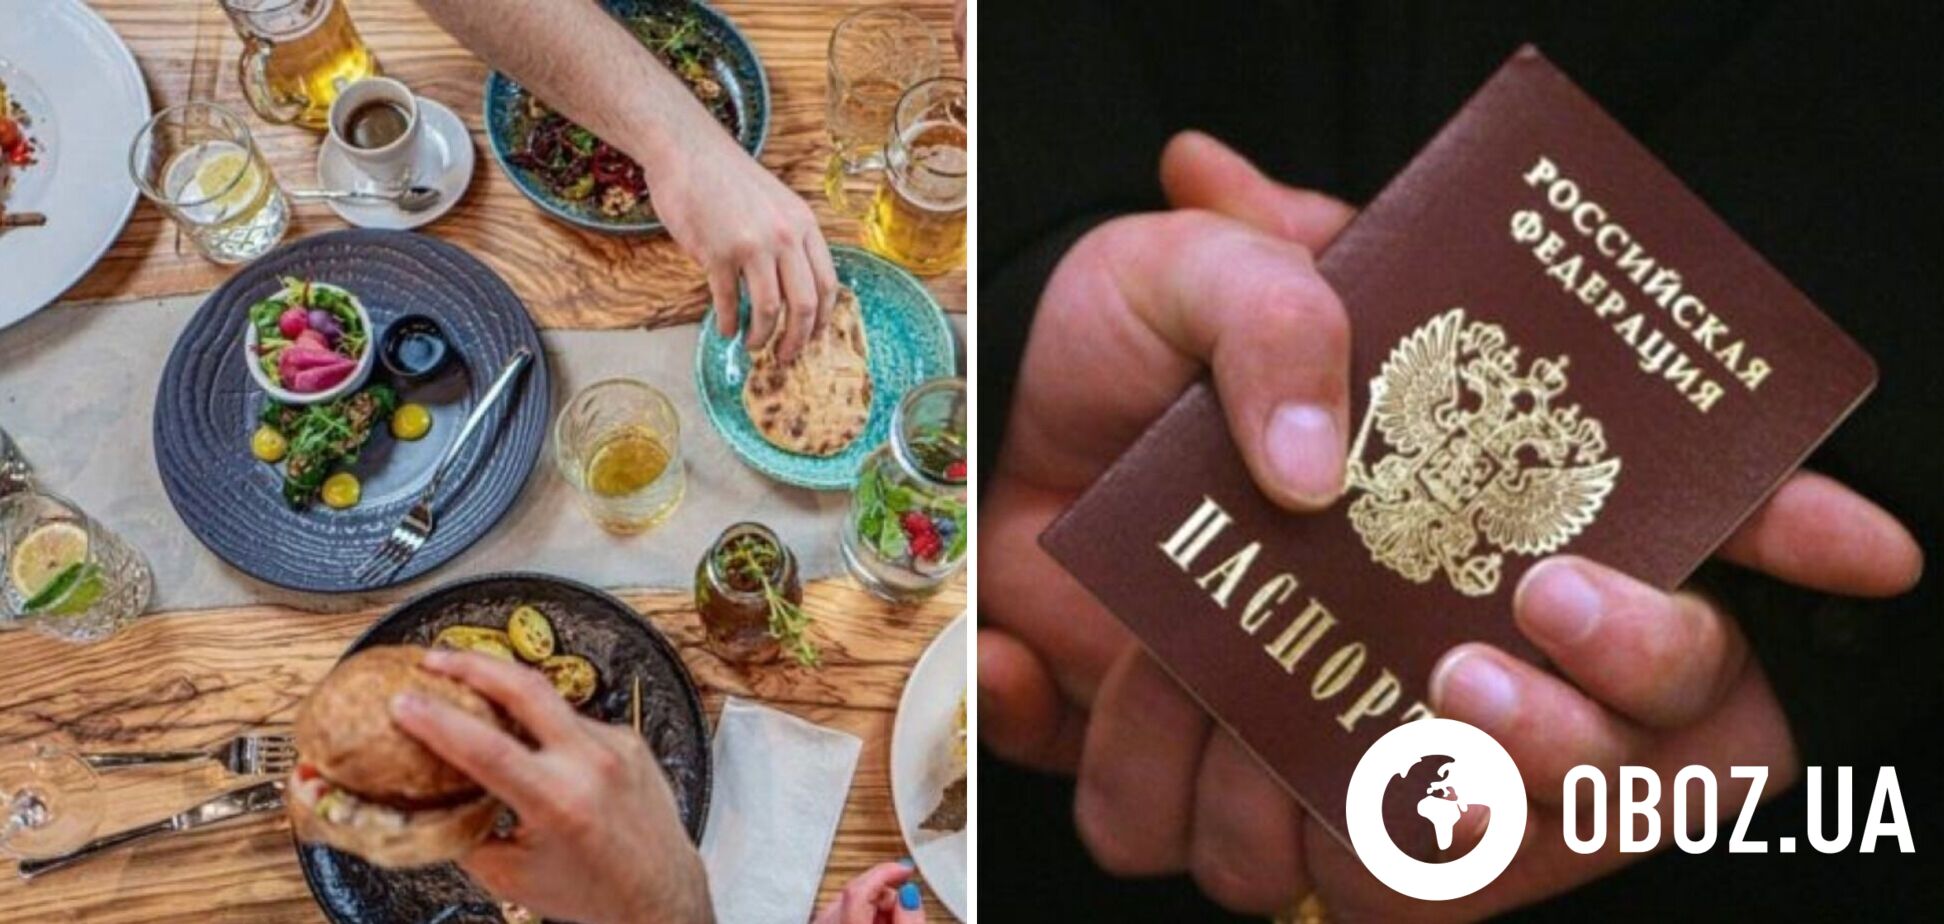 Російського туриста затримали на Балі за крадіжку їжі у відвідувачів ресторану